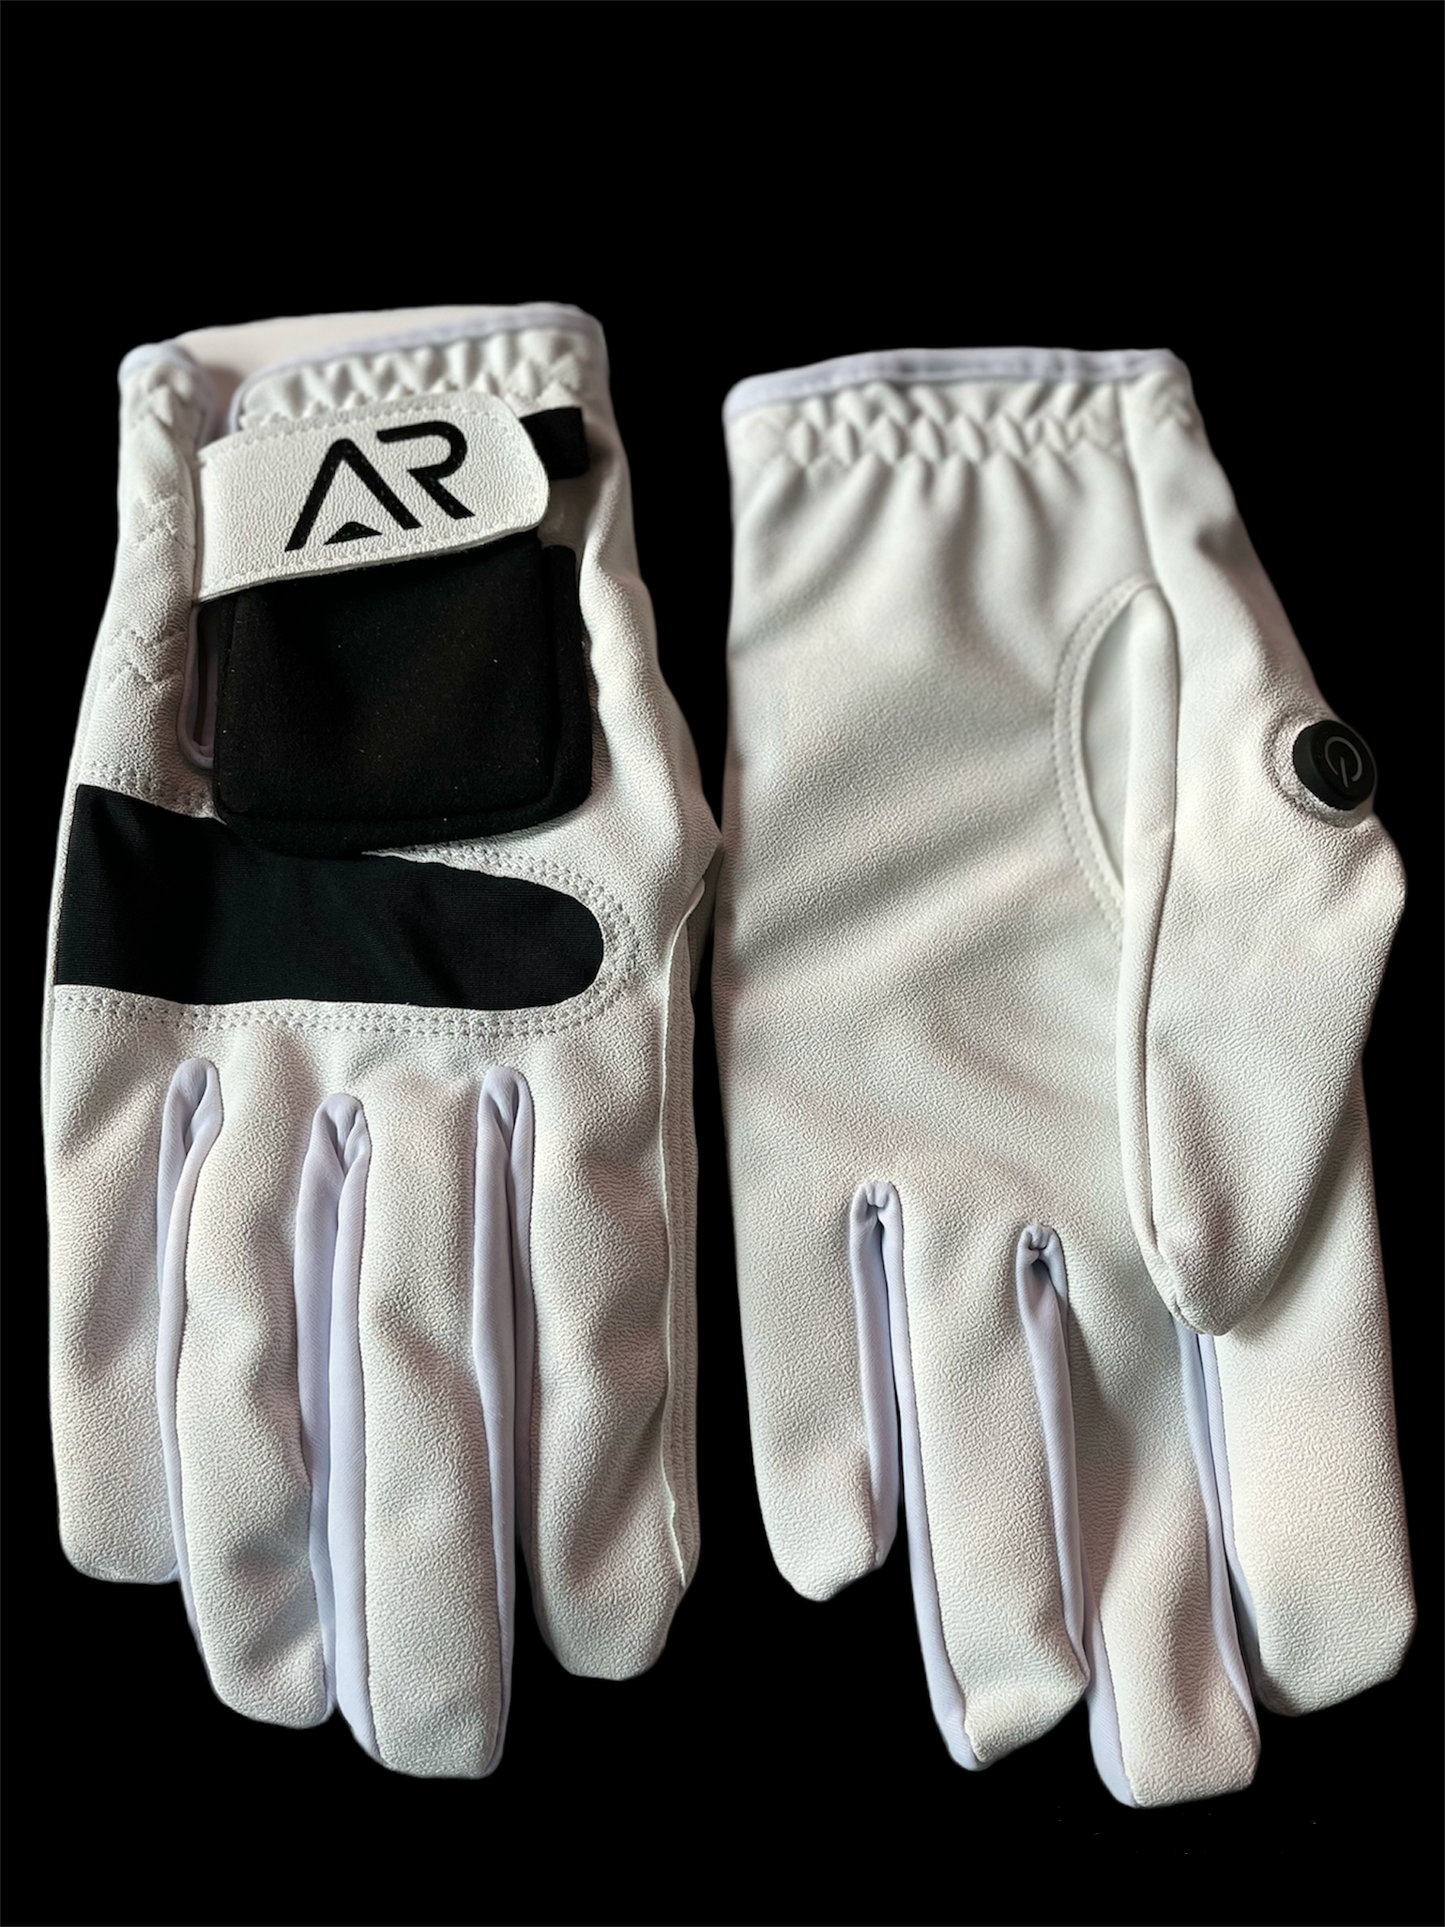 White AR Gen 1 Glove